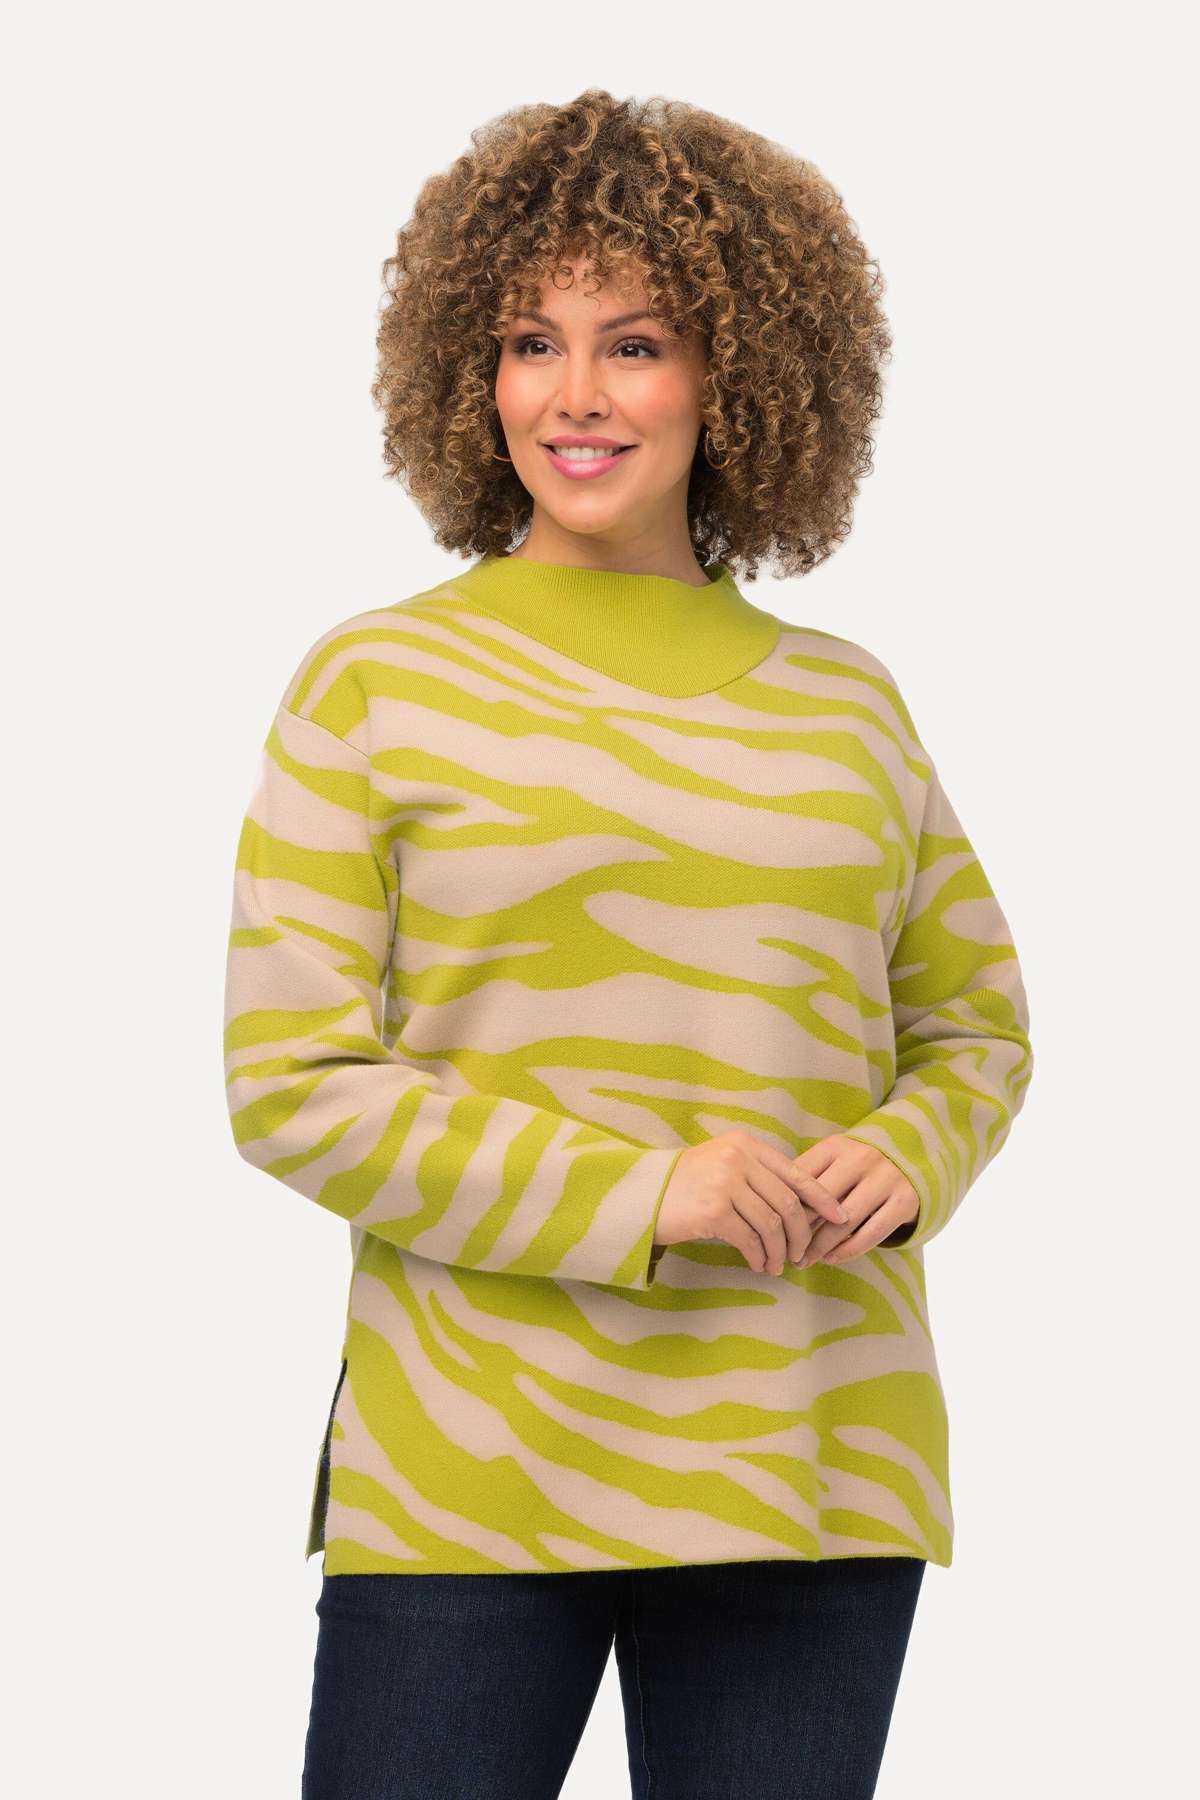 Вязаный пуловер с узором «зебра», воротник стойка, длинный рукав